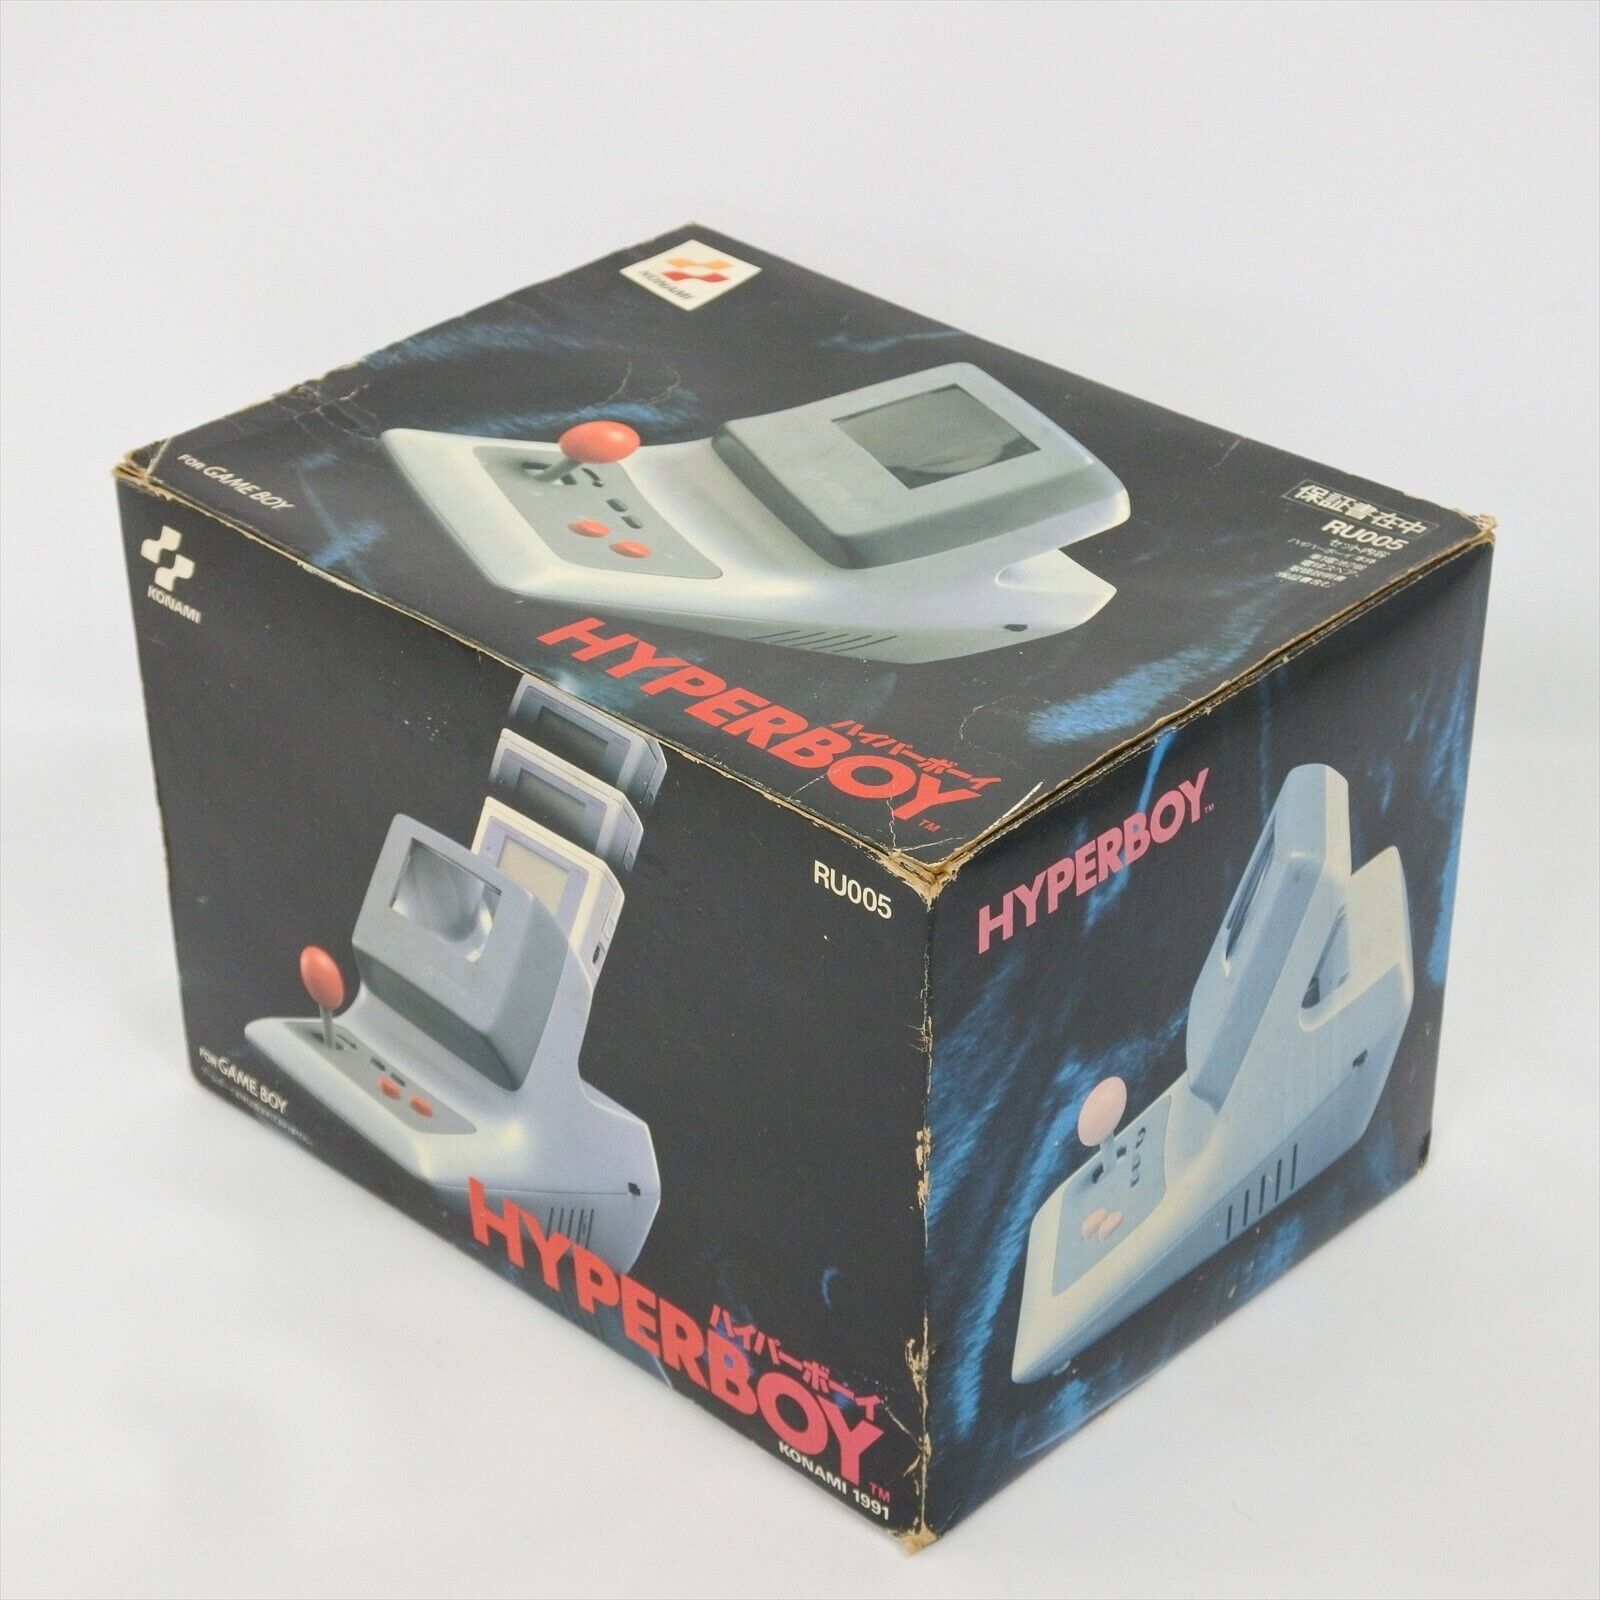 HYPER BOY RU005 Boxed for NINTENDO Game boy Boy Original Tested KONAMI 0101  gb